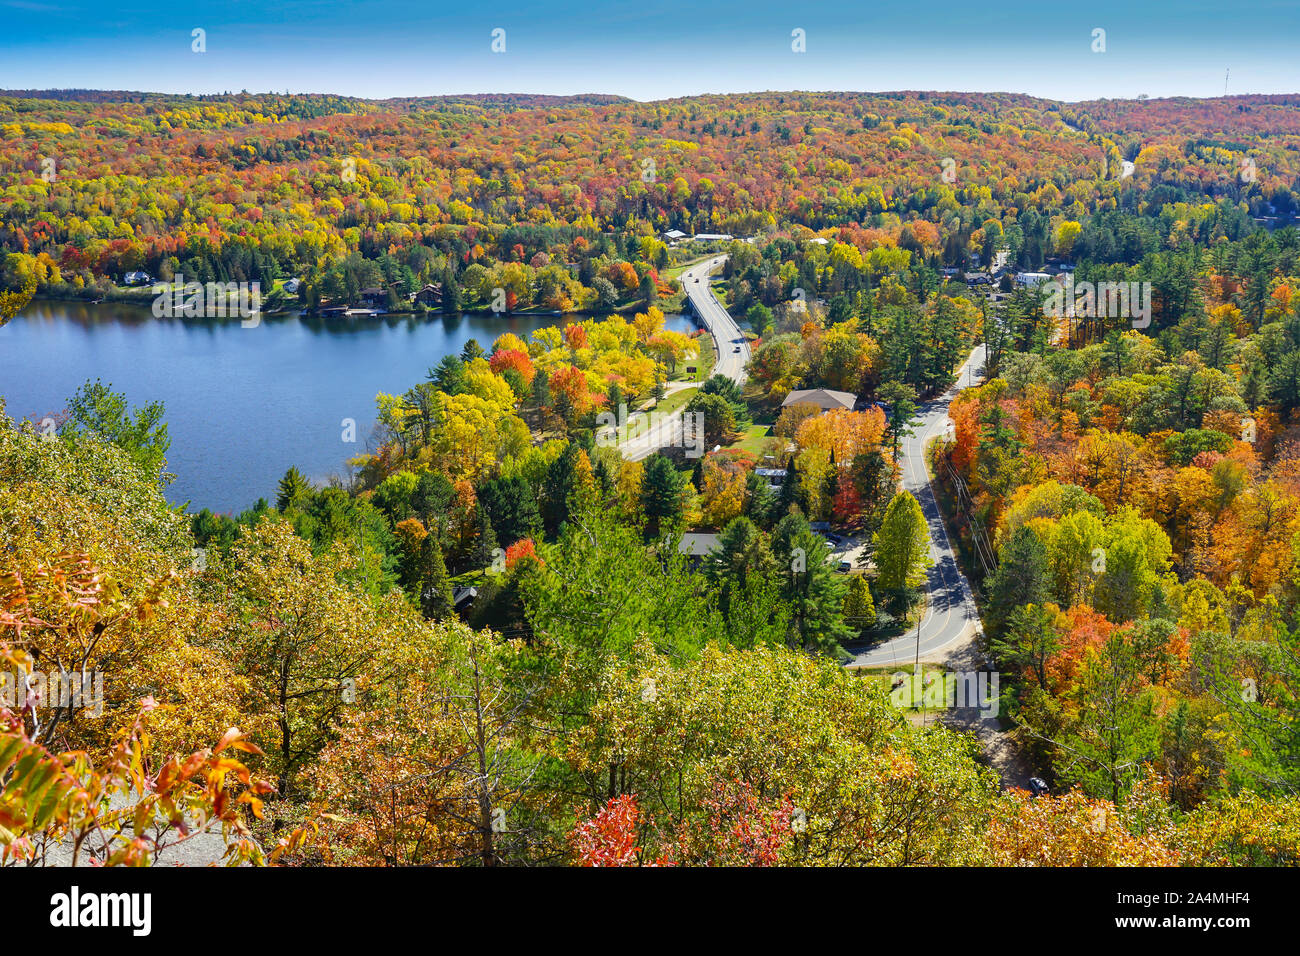 Die Stadt von Dorset in Ontario, Kanada, im Herbst oder im Herbst Jahreszeit mit bunten Ansichten und viele Touristen, die in der Fire Tower und Look-out-Hügel. Stockfoto